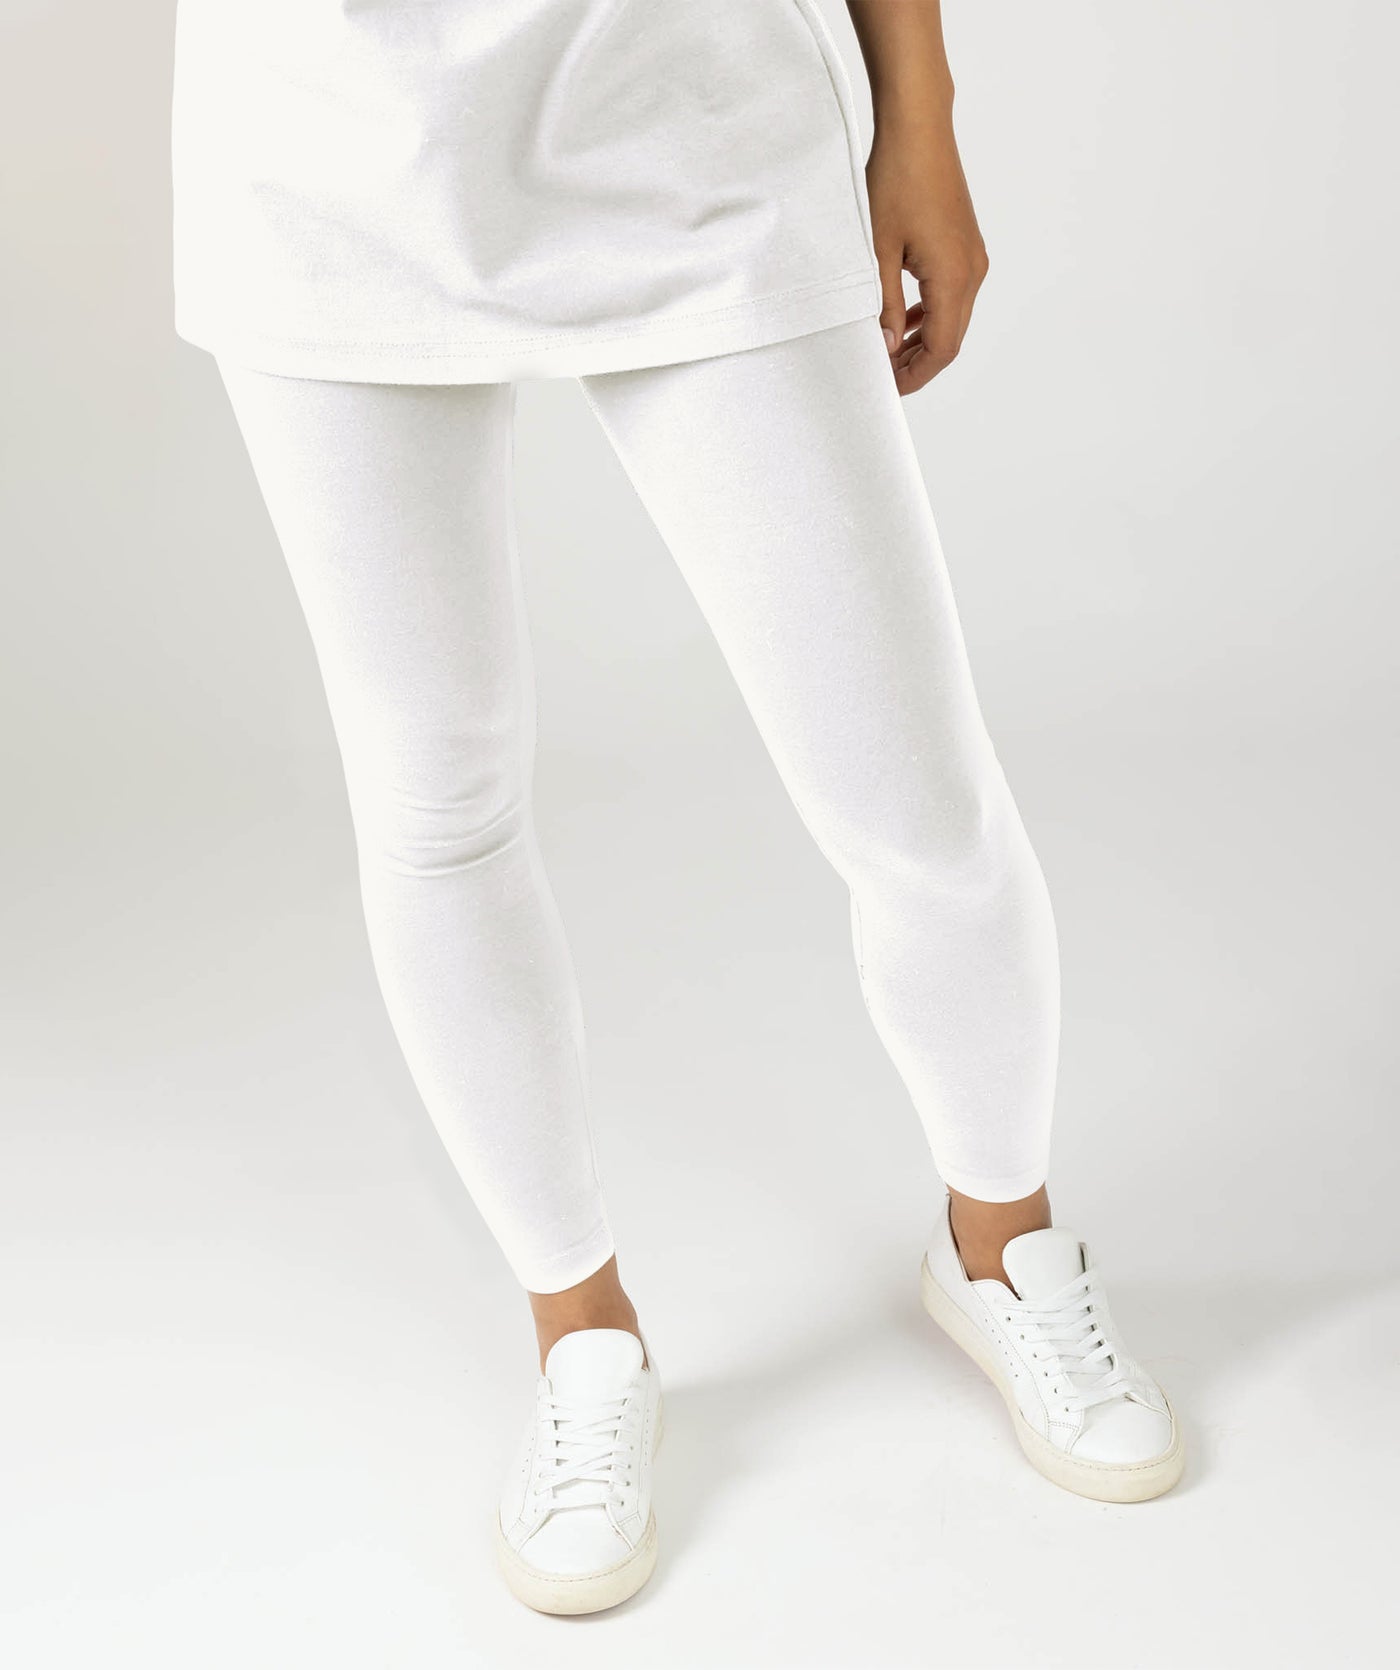 Flex Leggings Taille Haute Blanc